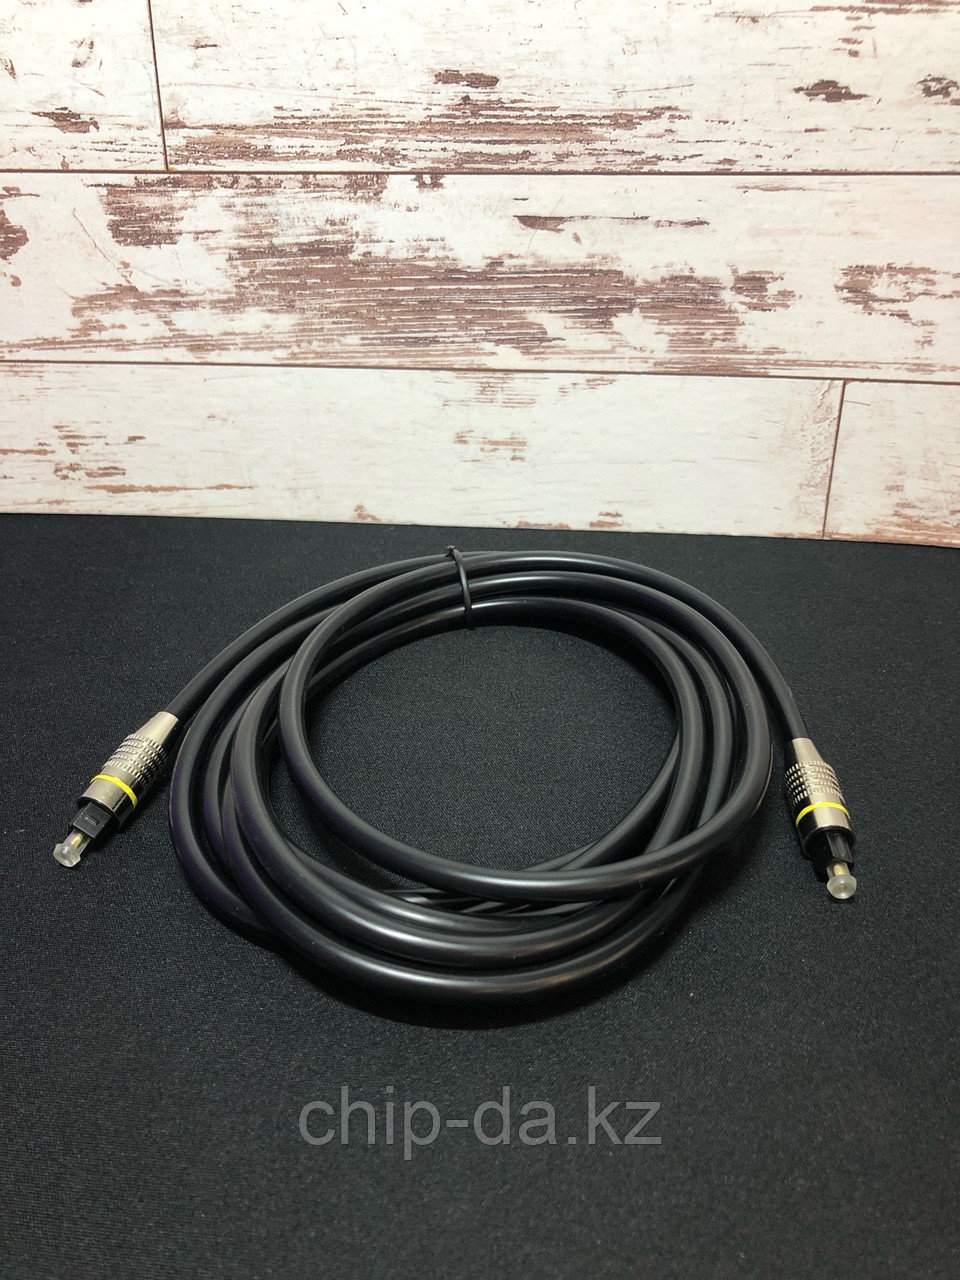 Оптический кабель 1.5 метра